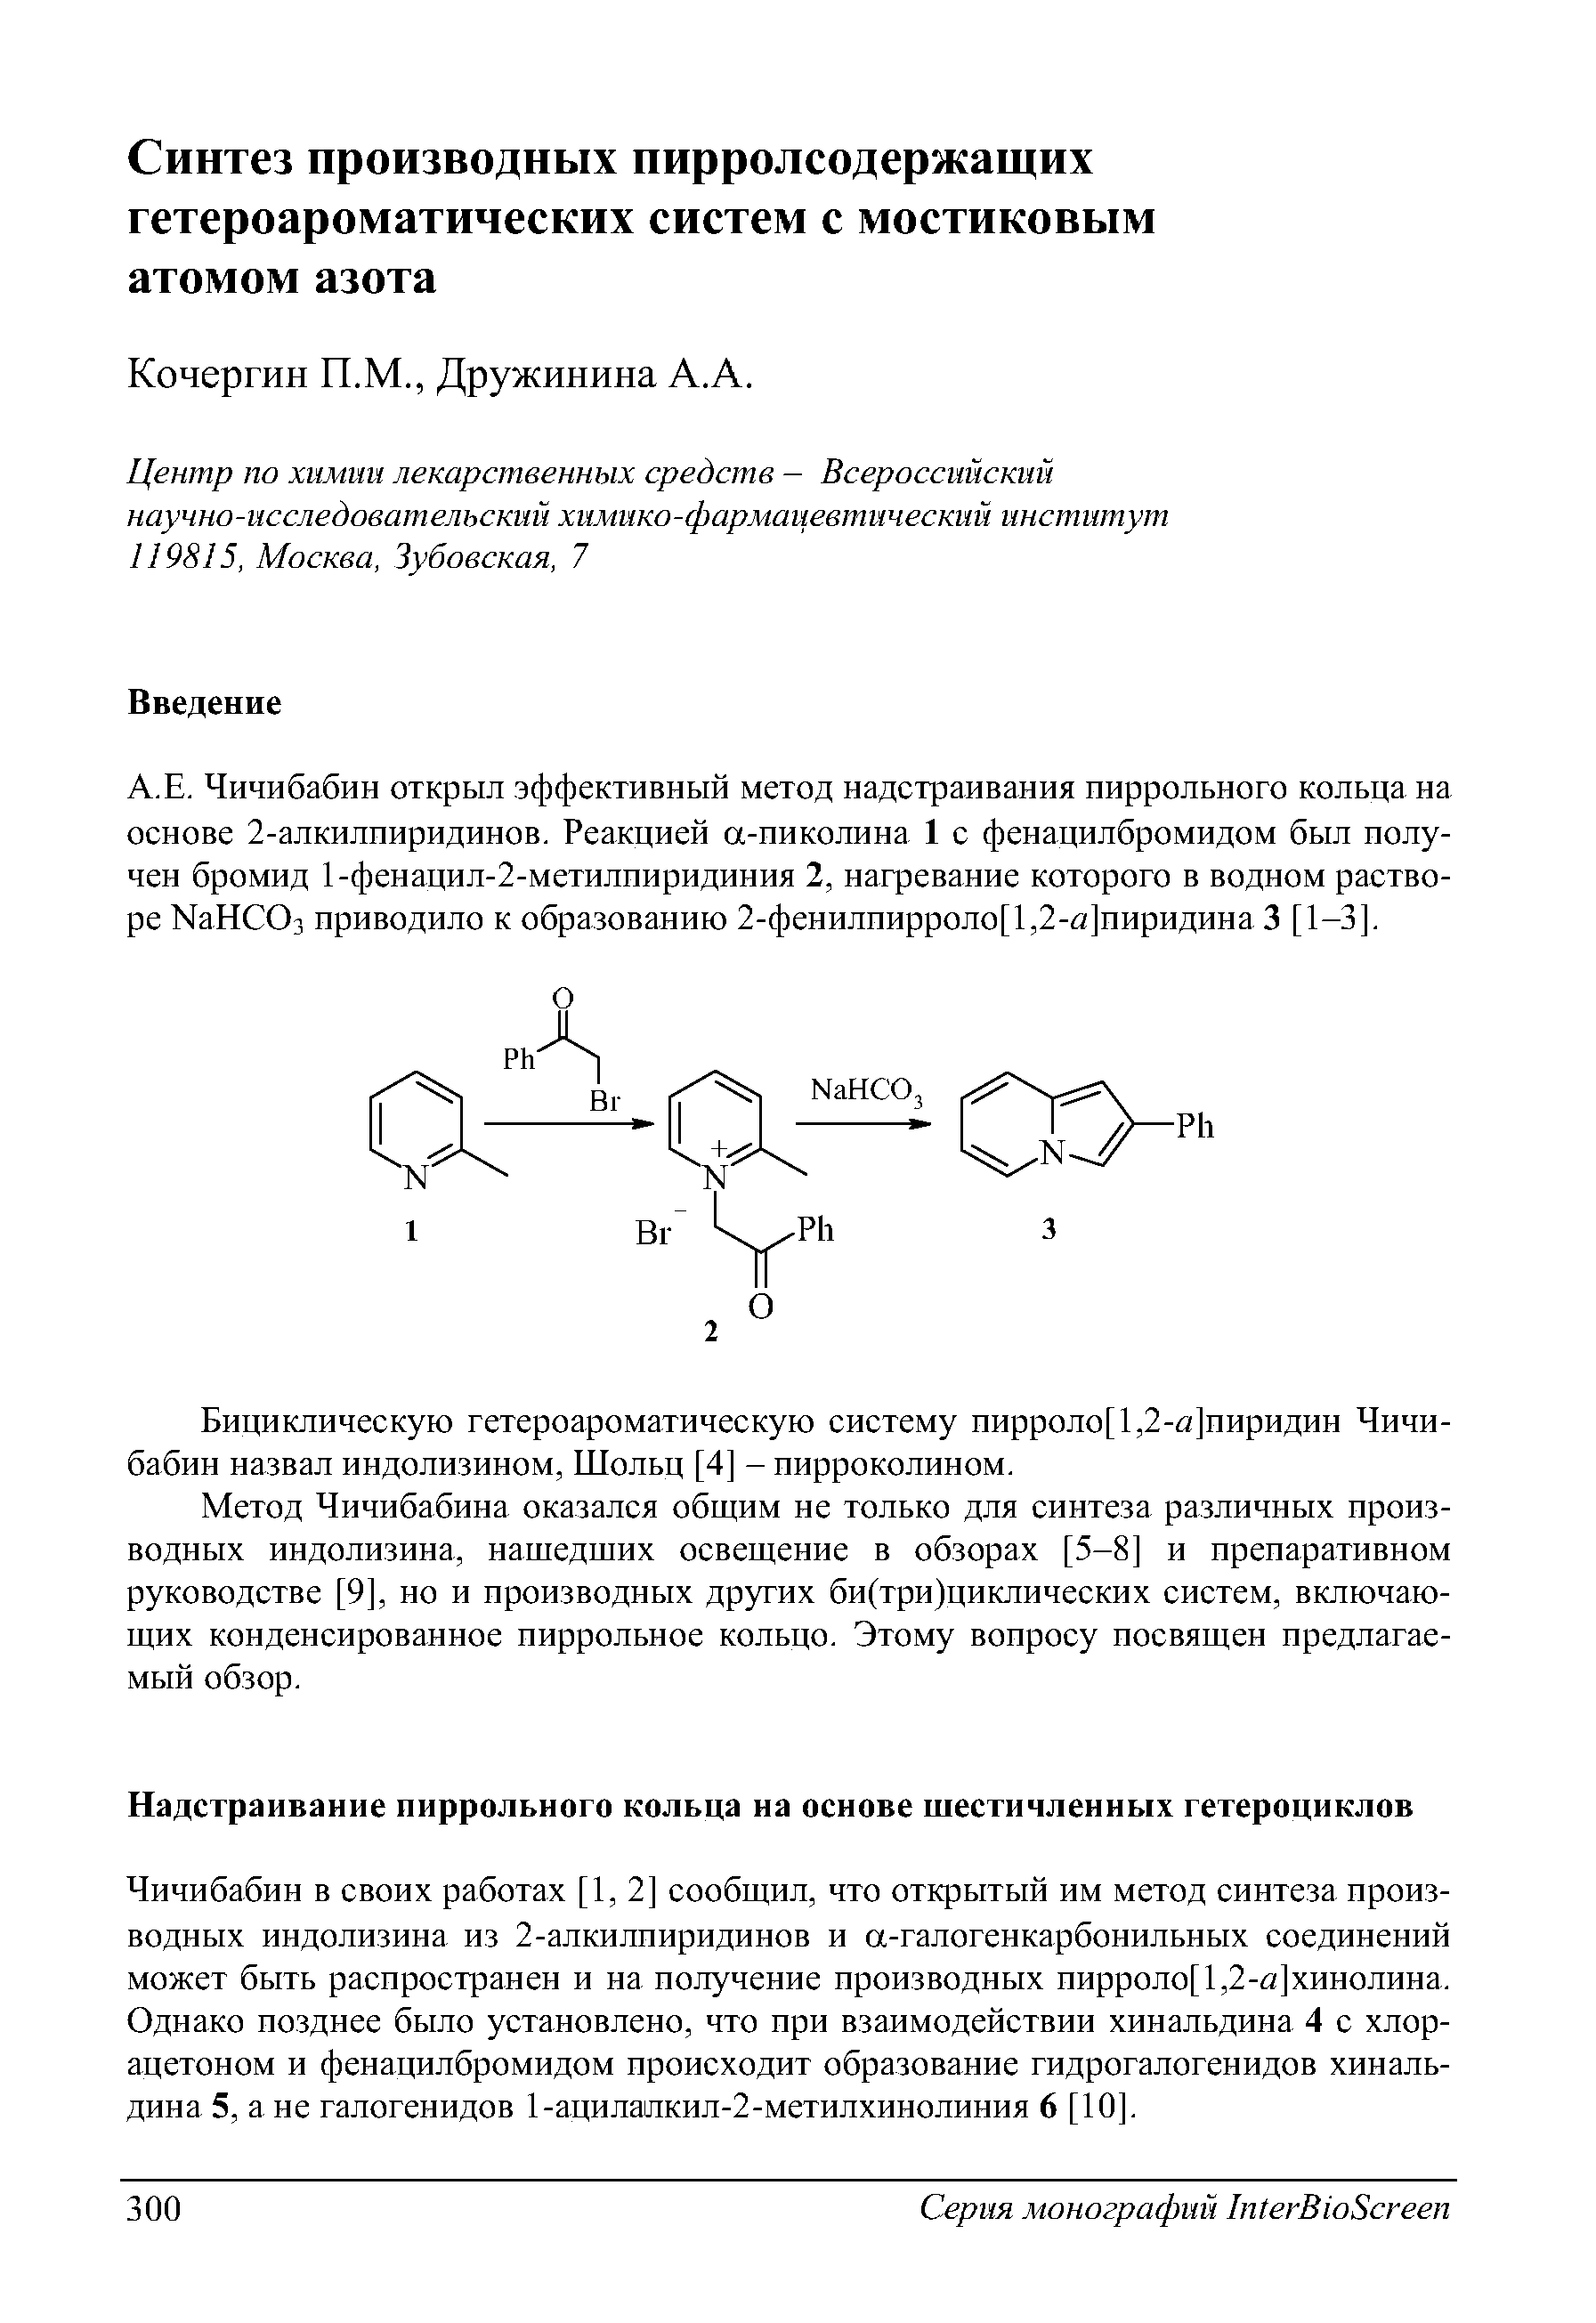 Чичибабин открыл эффективный метод надстраивания пиррольного кольца на основе 2-алкилпиридинов. Реакцией а-пиколина 1 с фенацилбромидом был получен бромид 1-фенацил-2-метилпиридиния 2, нагревание которого в водном растворе МаНСОз приводило к образованию 2-фенилпирроло[1,2-й ]пиридина 3 [1-3].